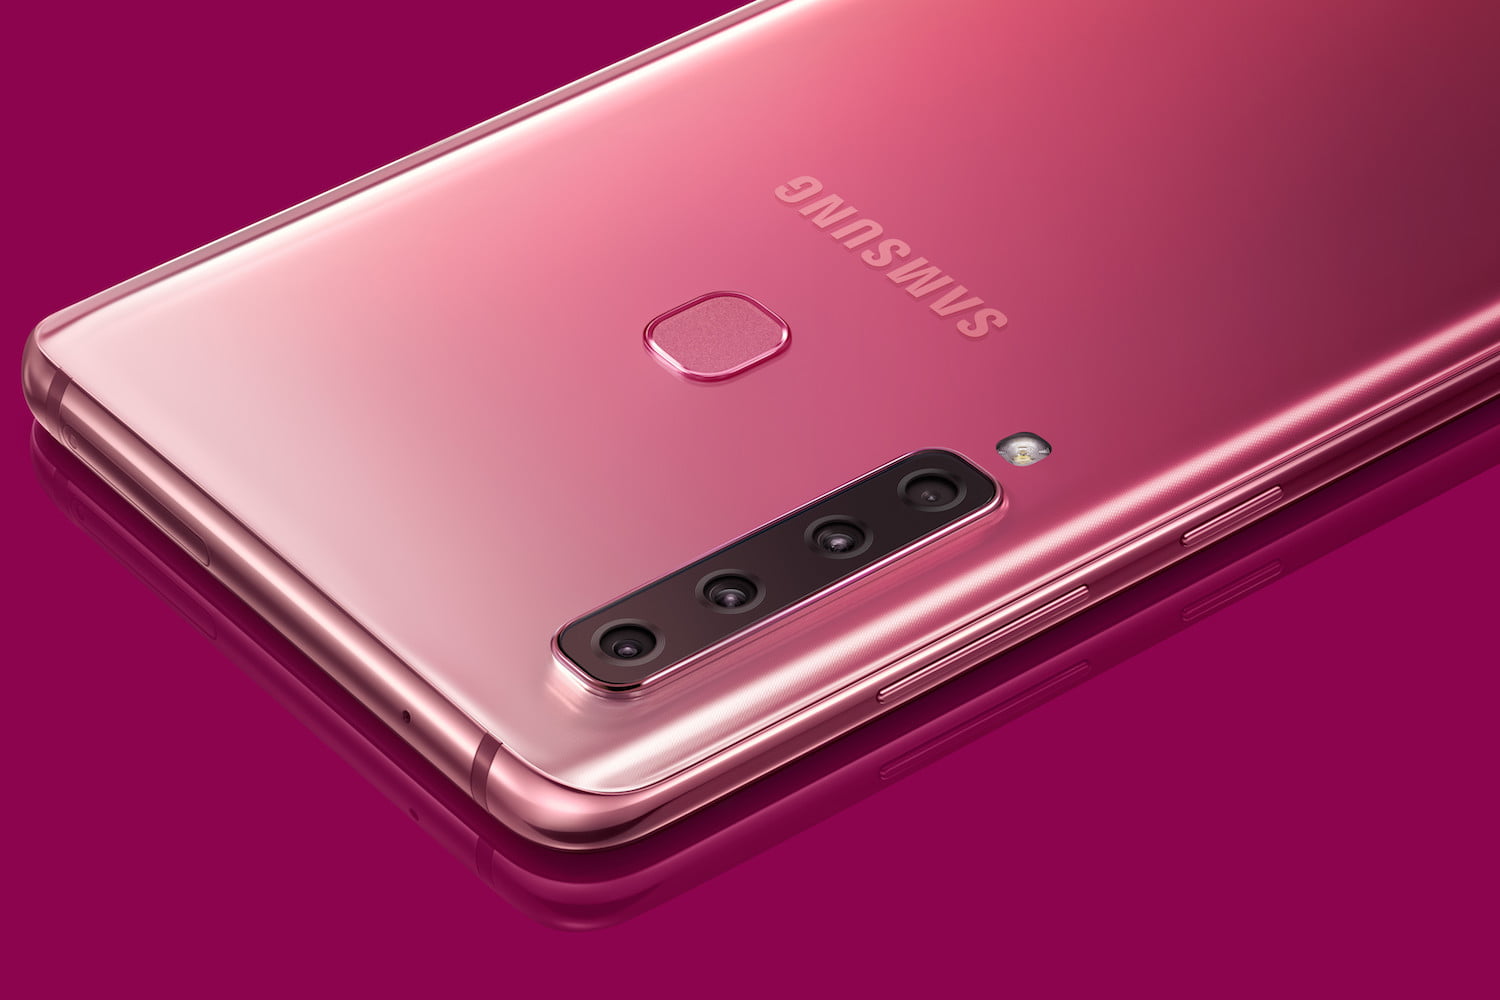 sabor dulce abdomen sábado Samsung Galaxy A9 (2018): Qué diferencias hay respecto al Galaxy A8 y A7 |  Computer Hoy